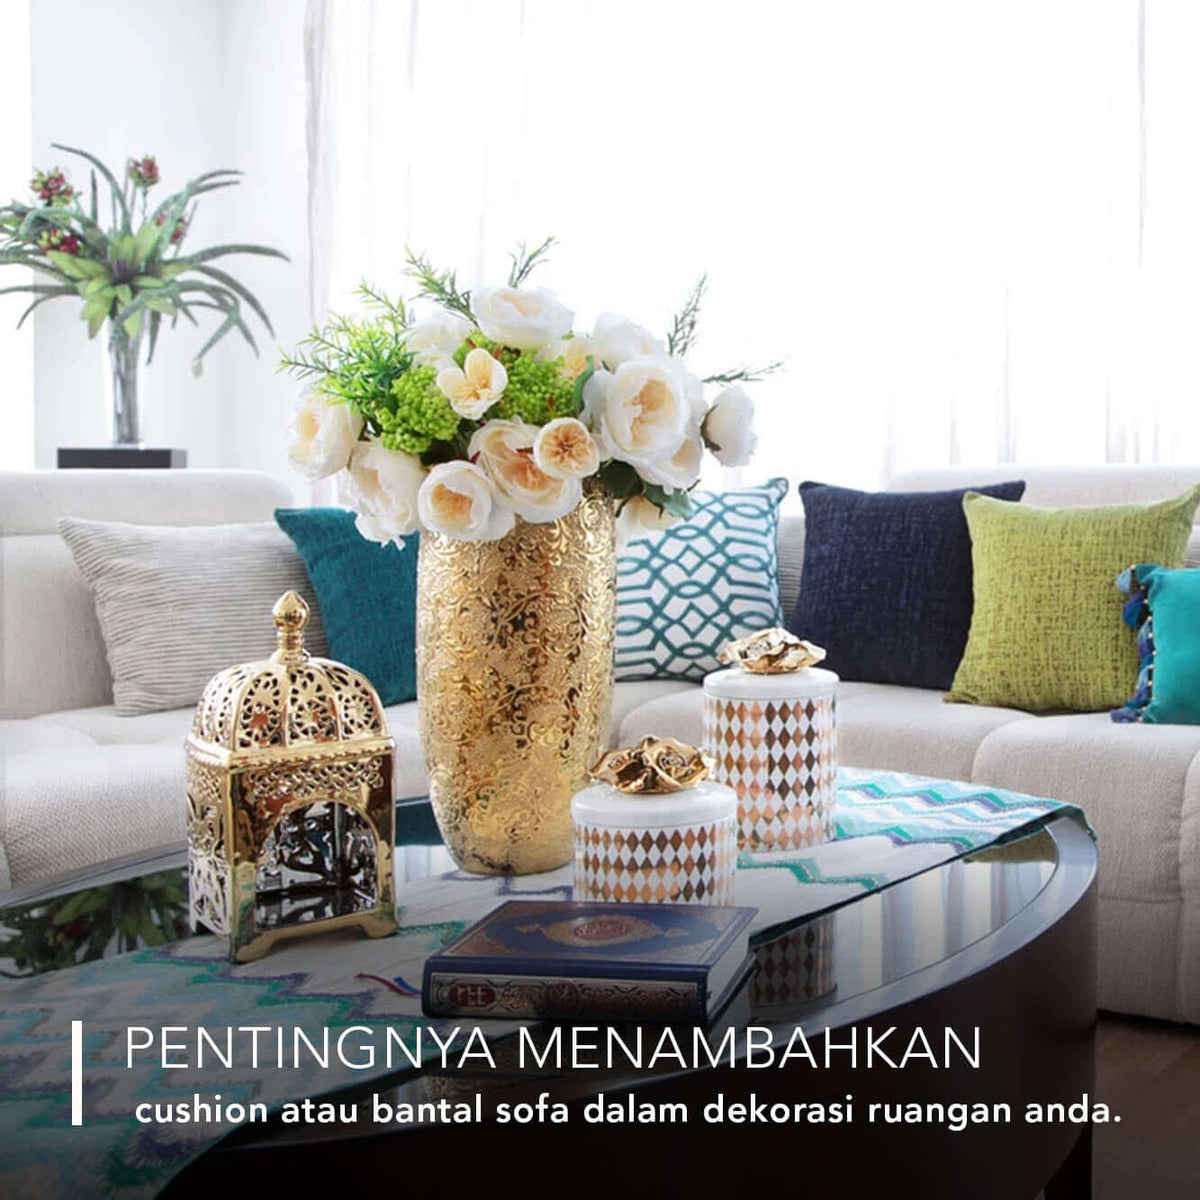 Pentingnya menambahkan cushion atau bantal sofa dalam dekorasi ruangan anda.